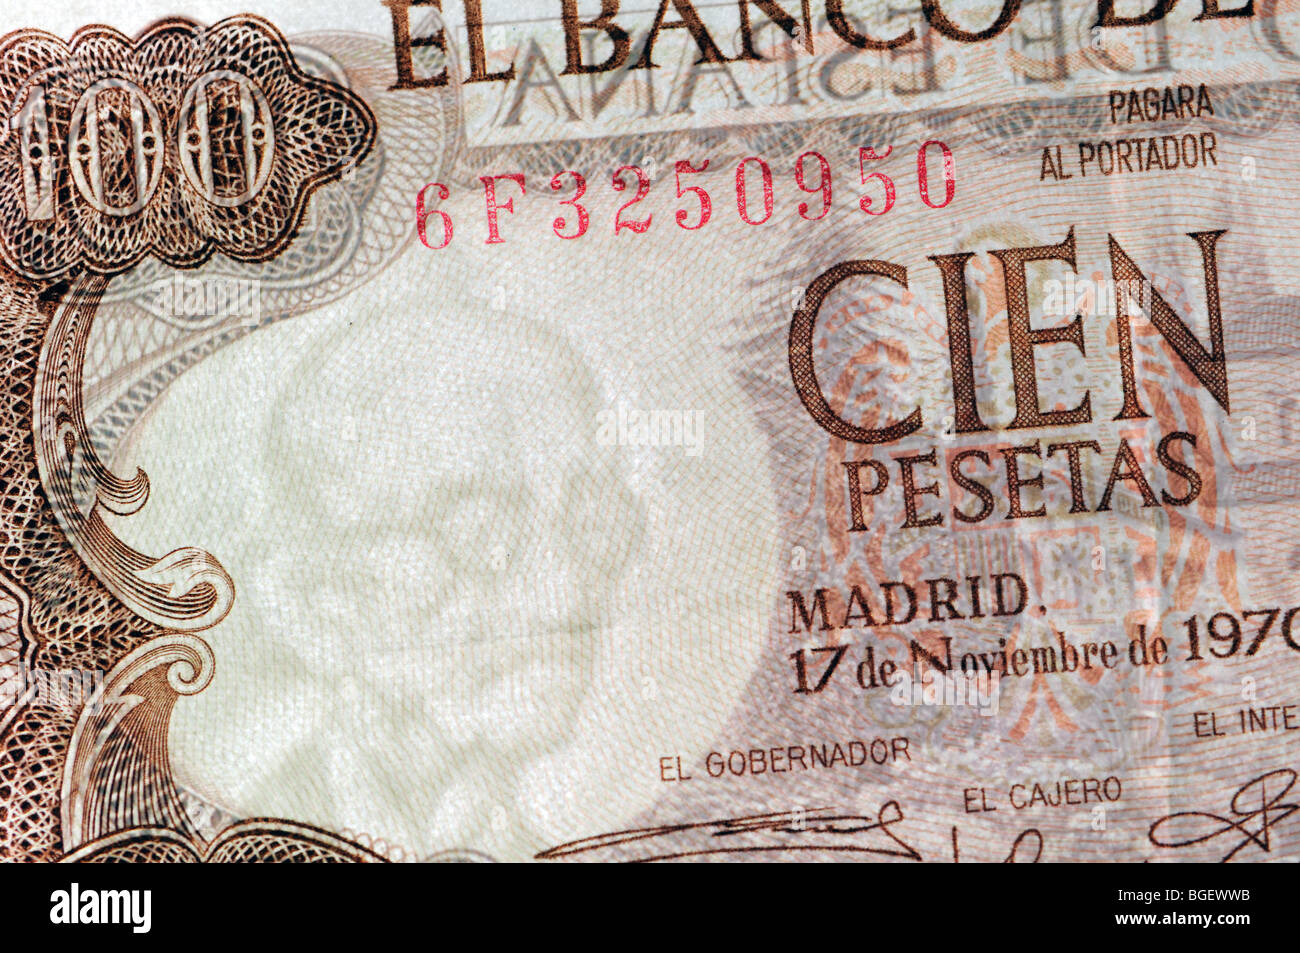 Billet de 100 pesetas espagnoles de 1970 montrant le filigrane illustrant Manuel de Falla Banque D'Images